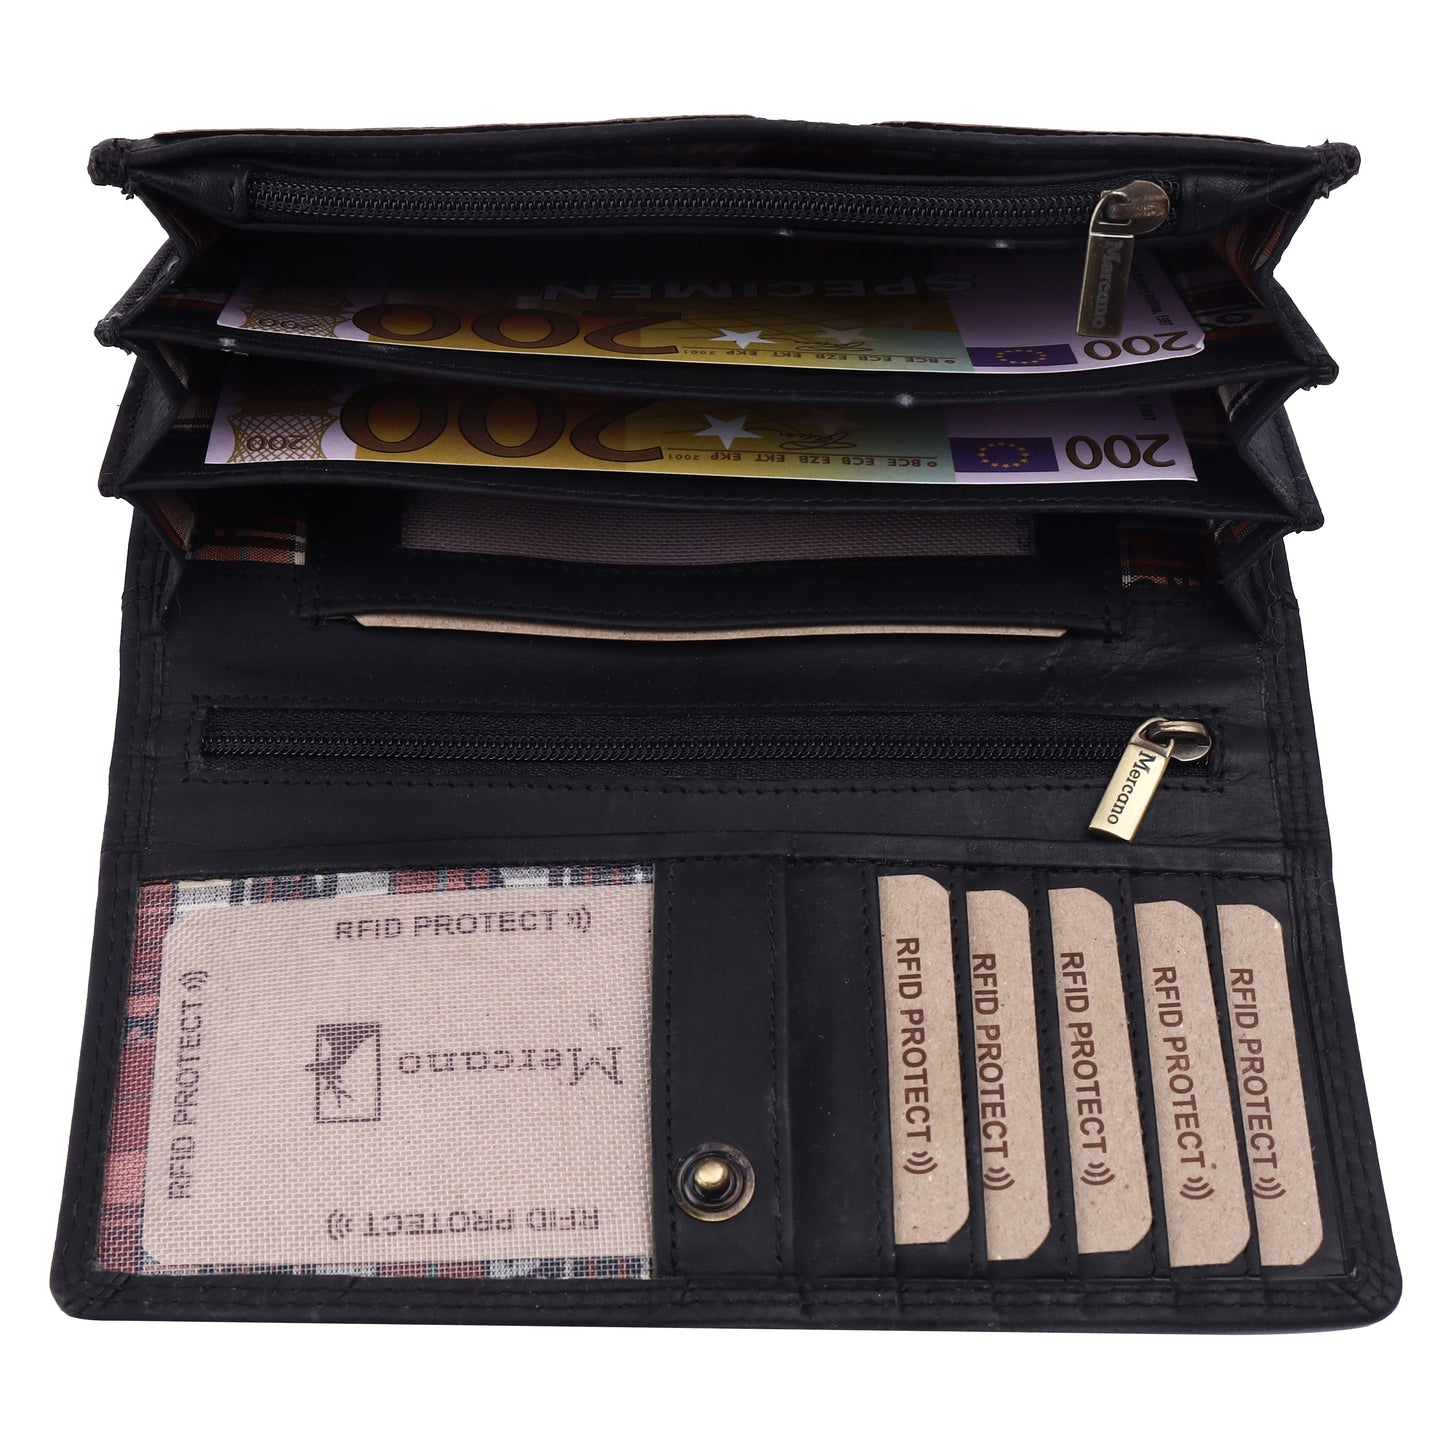 MERCANO® Schwarze Damen Geldbörse aus Leder mit RFID-Schutz | 11 Kartenfächern | 4 Scheinfächern | Münzfach | #PL03